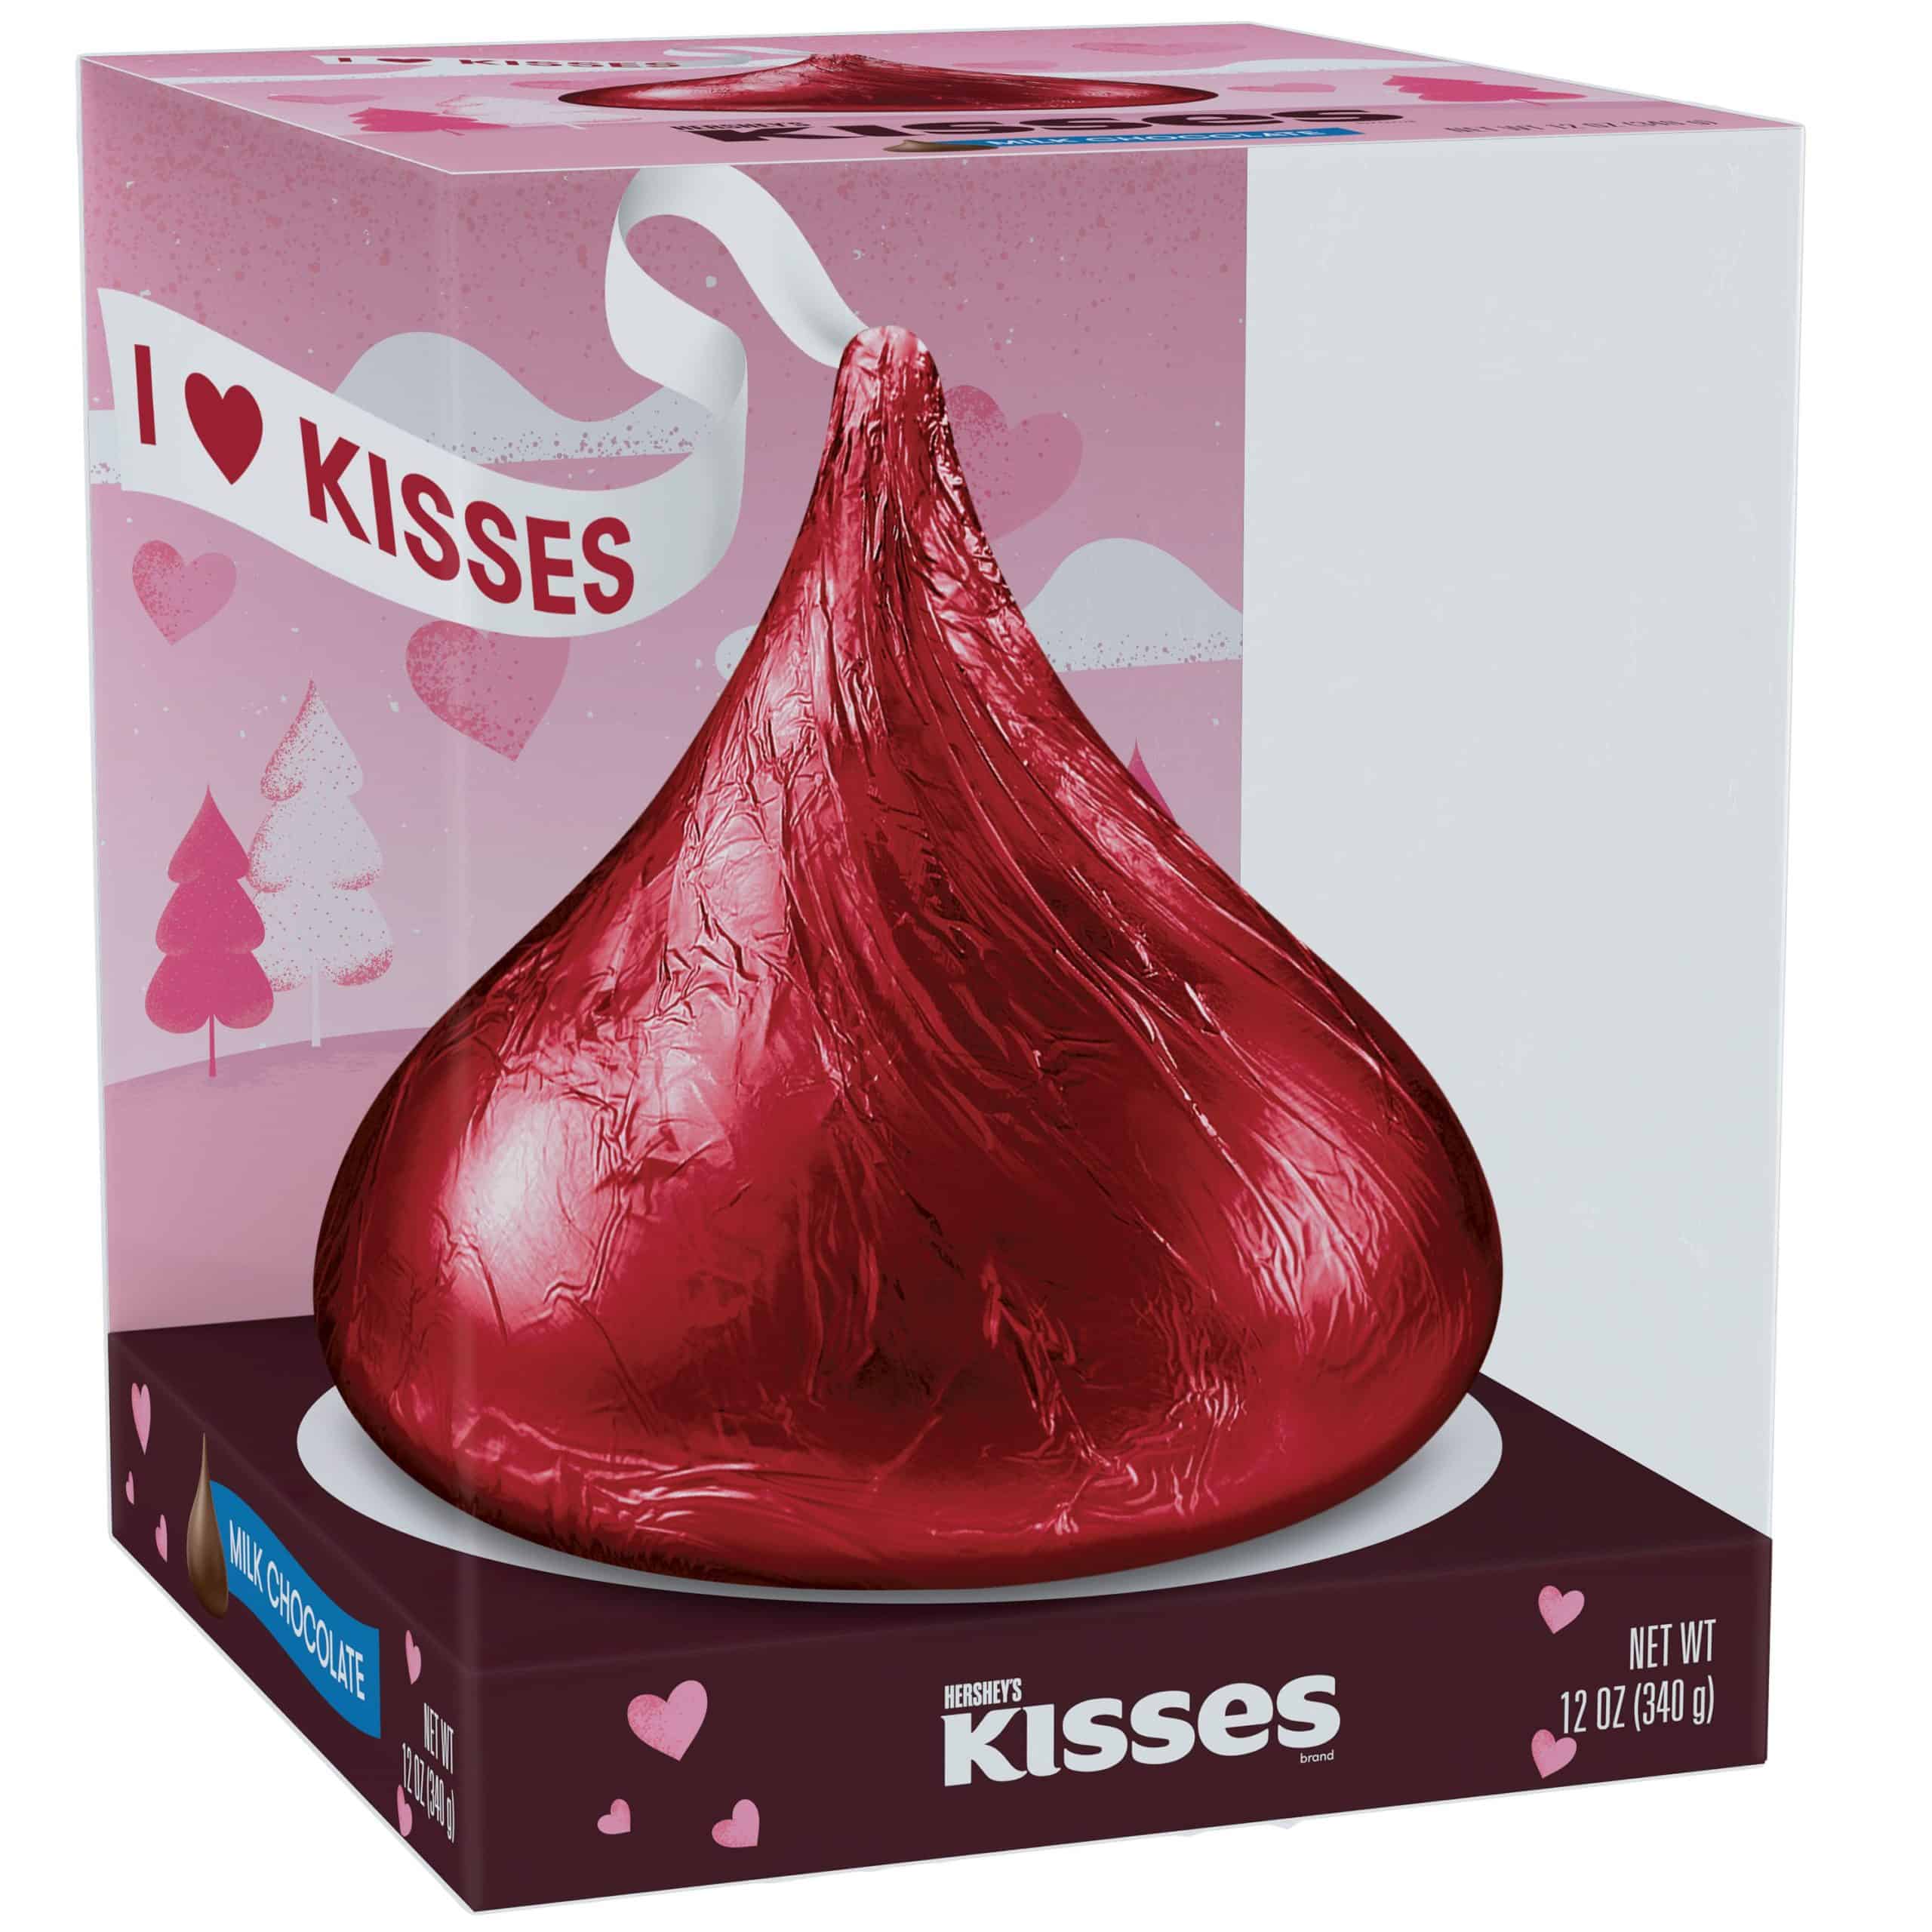 Giant Hersheys Kisses